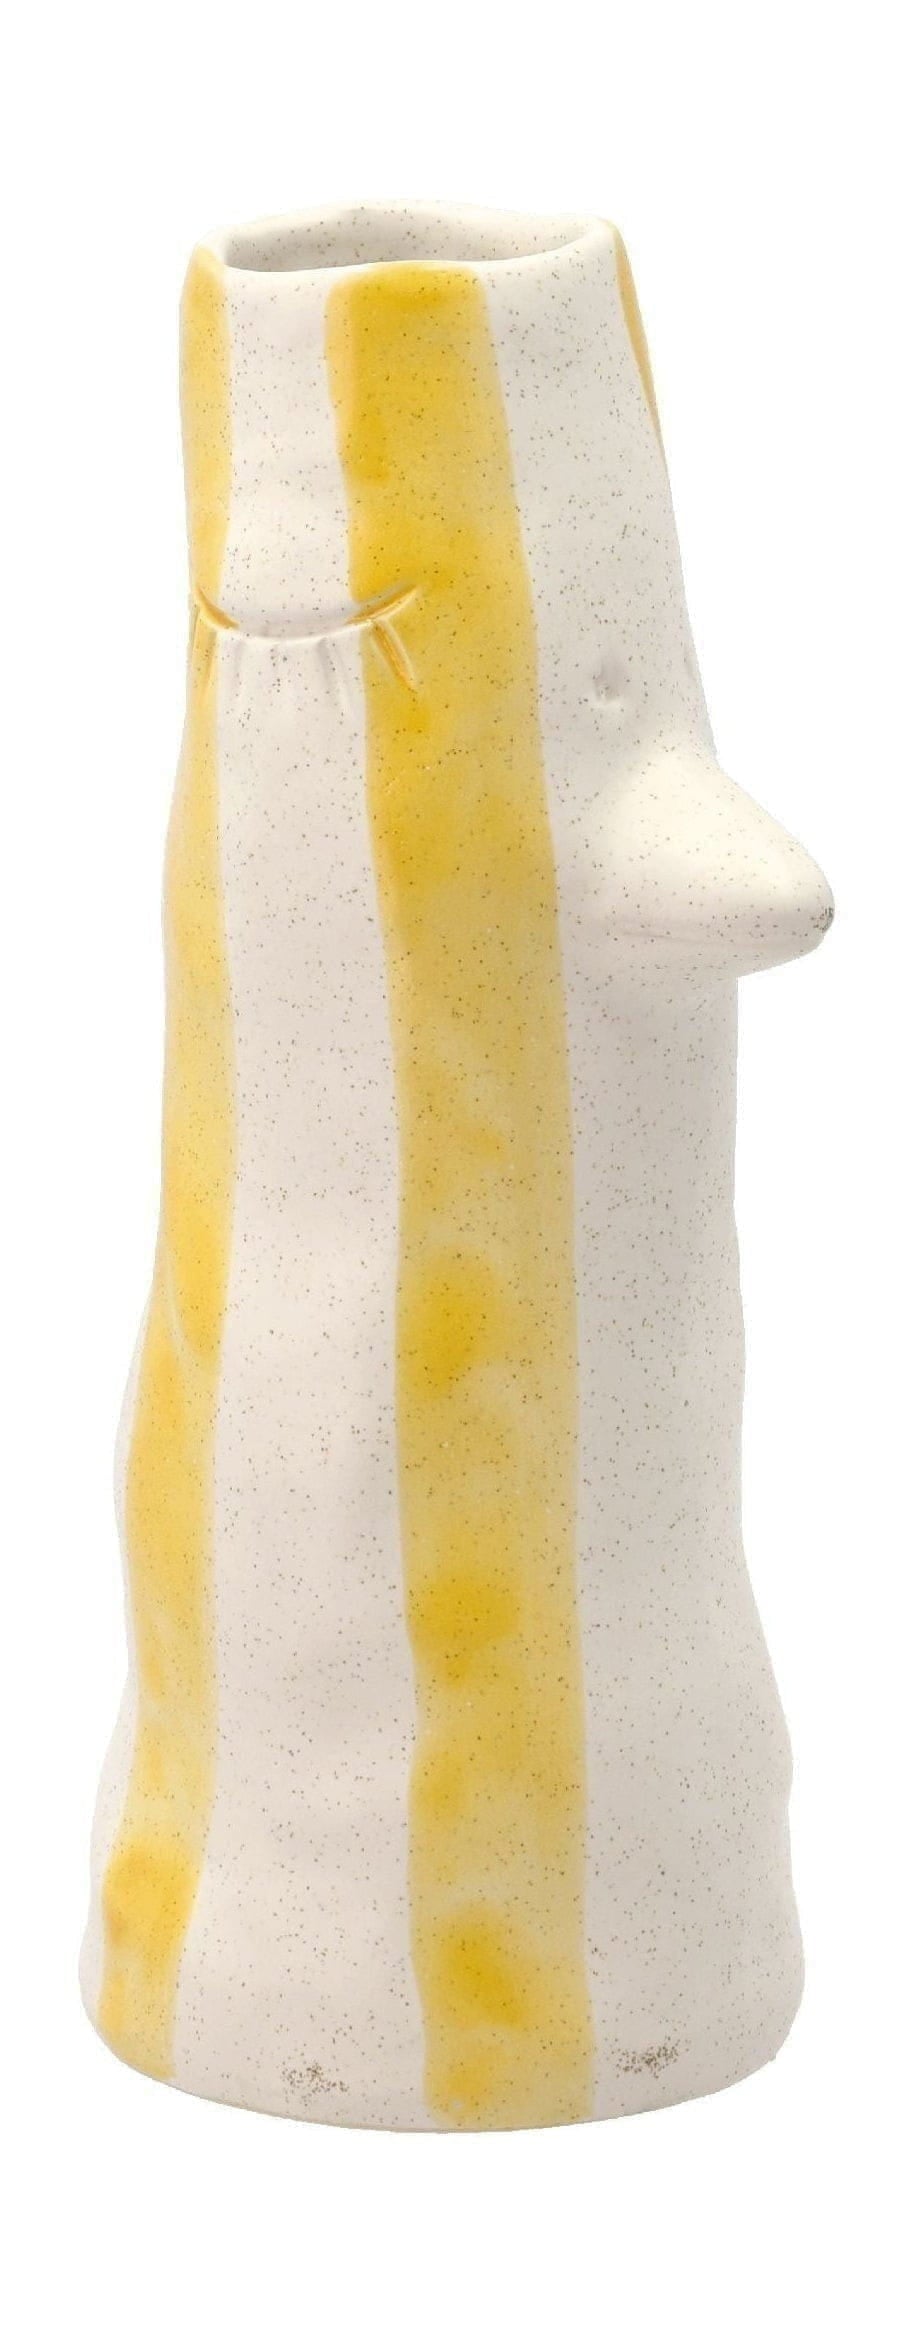 Villa Collection Styles váza s zobákem a řasy malé, žluté